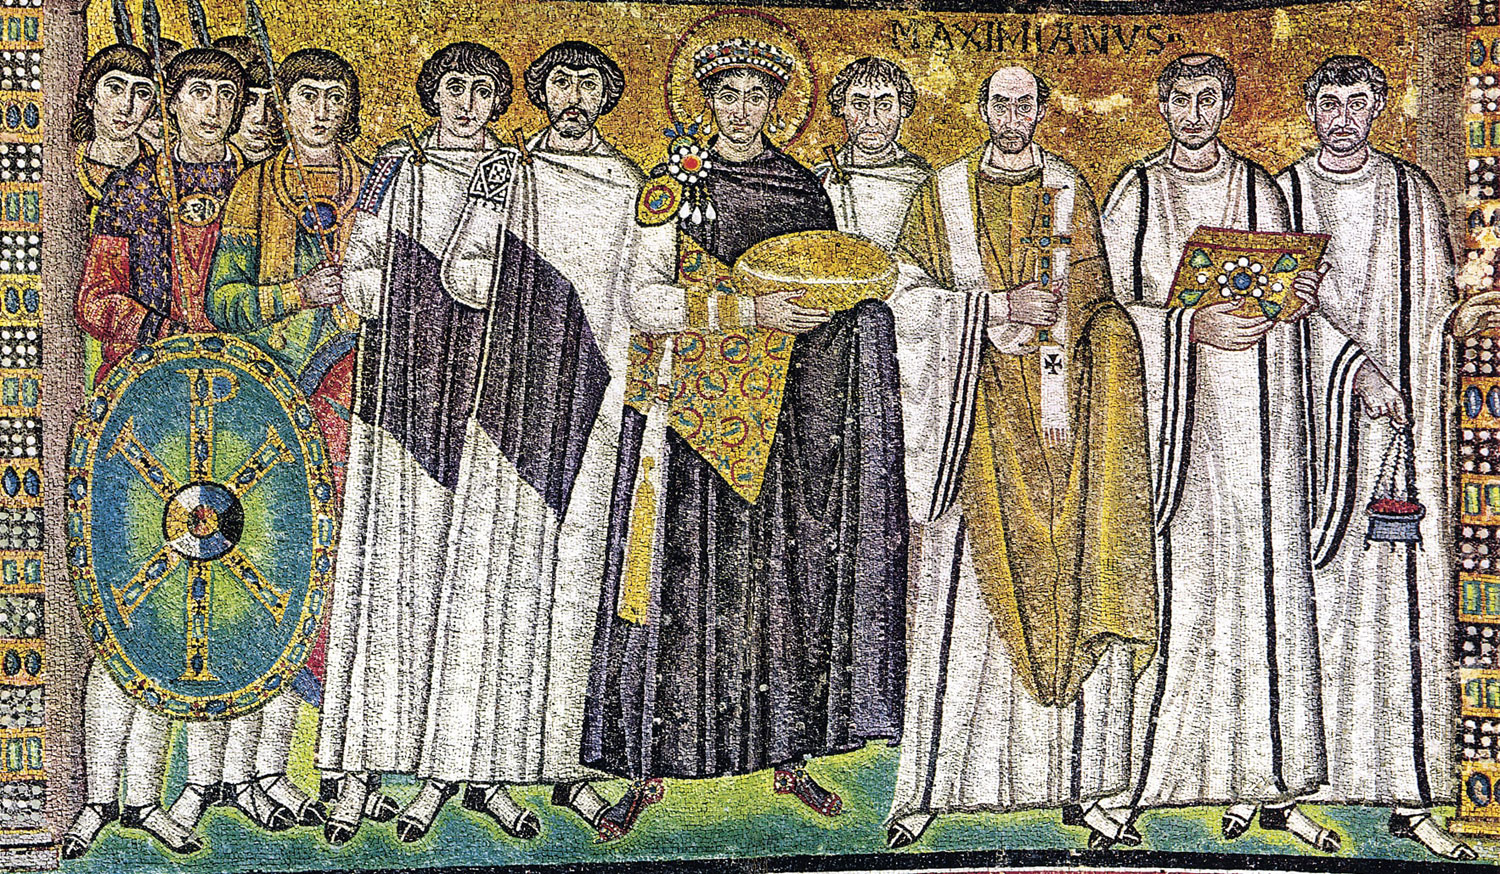 L'imperatore Giustiniano e il suo corteo, mosaico nella basilica di San Vitale
